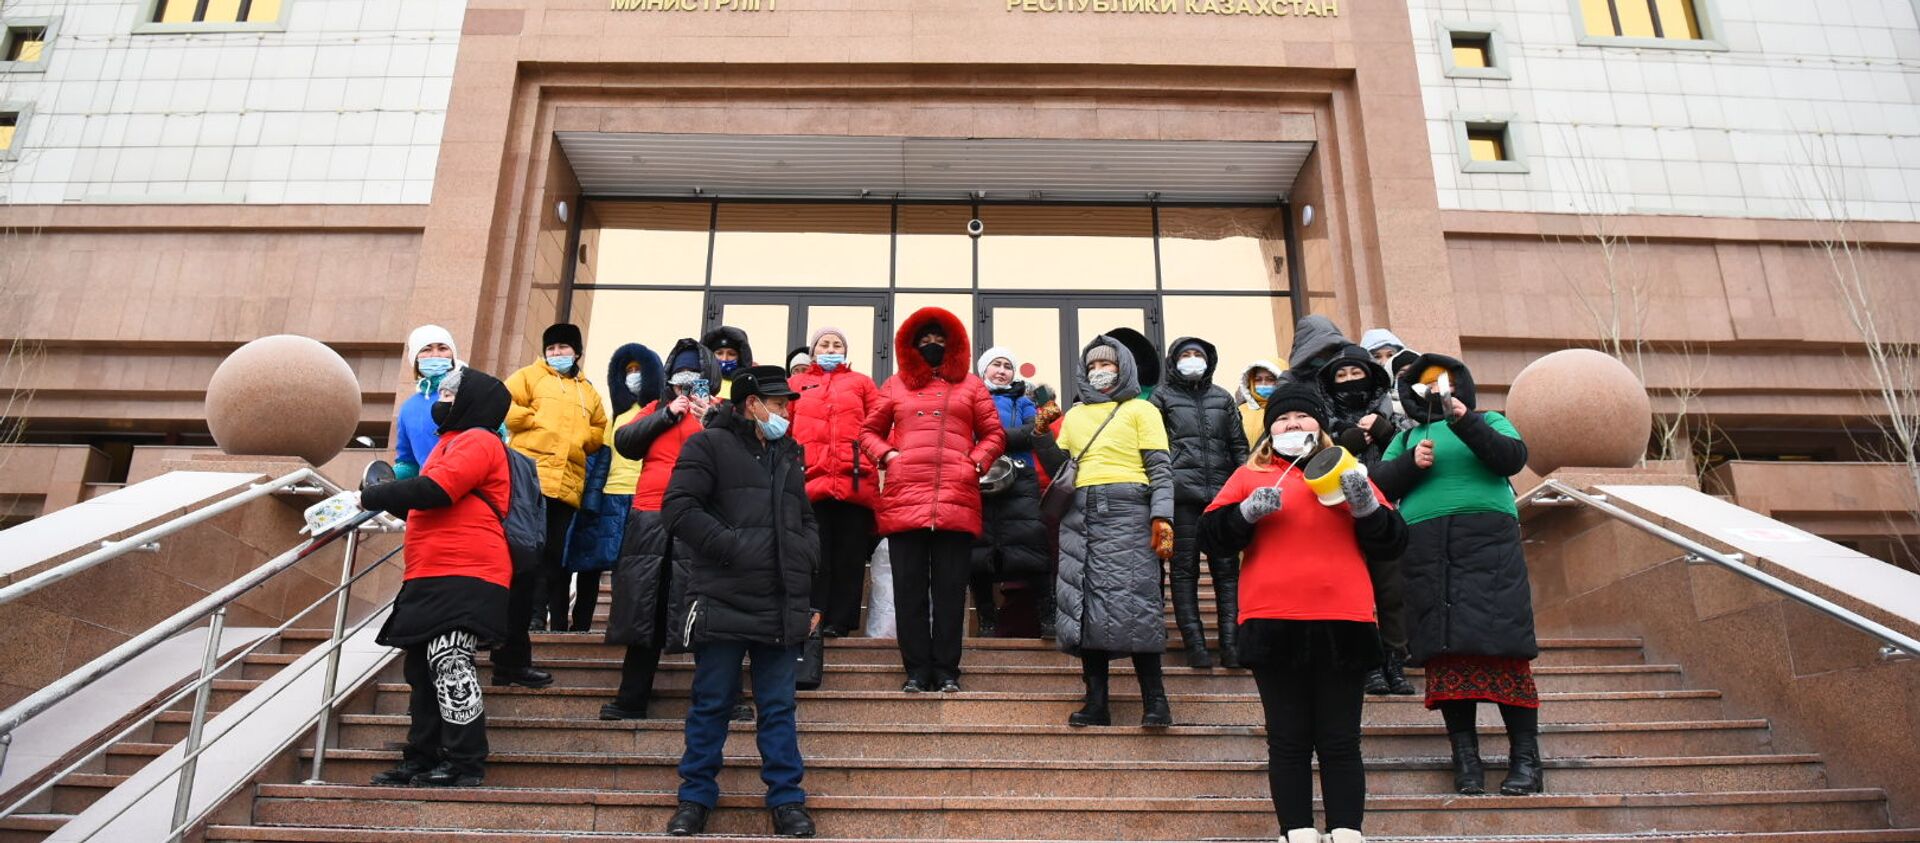 Группа людей с кастрюлями устроили акцию протеста у здания Минздрава  - Sputnik Казахстан, 1920, 03.02.2021